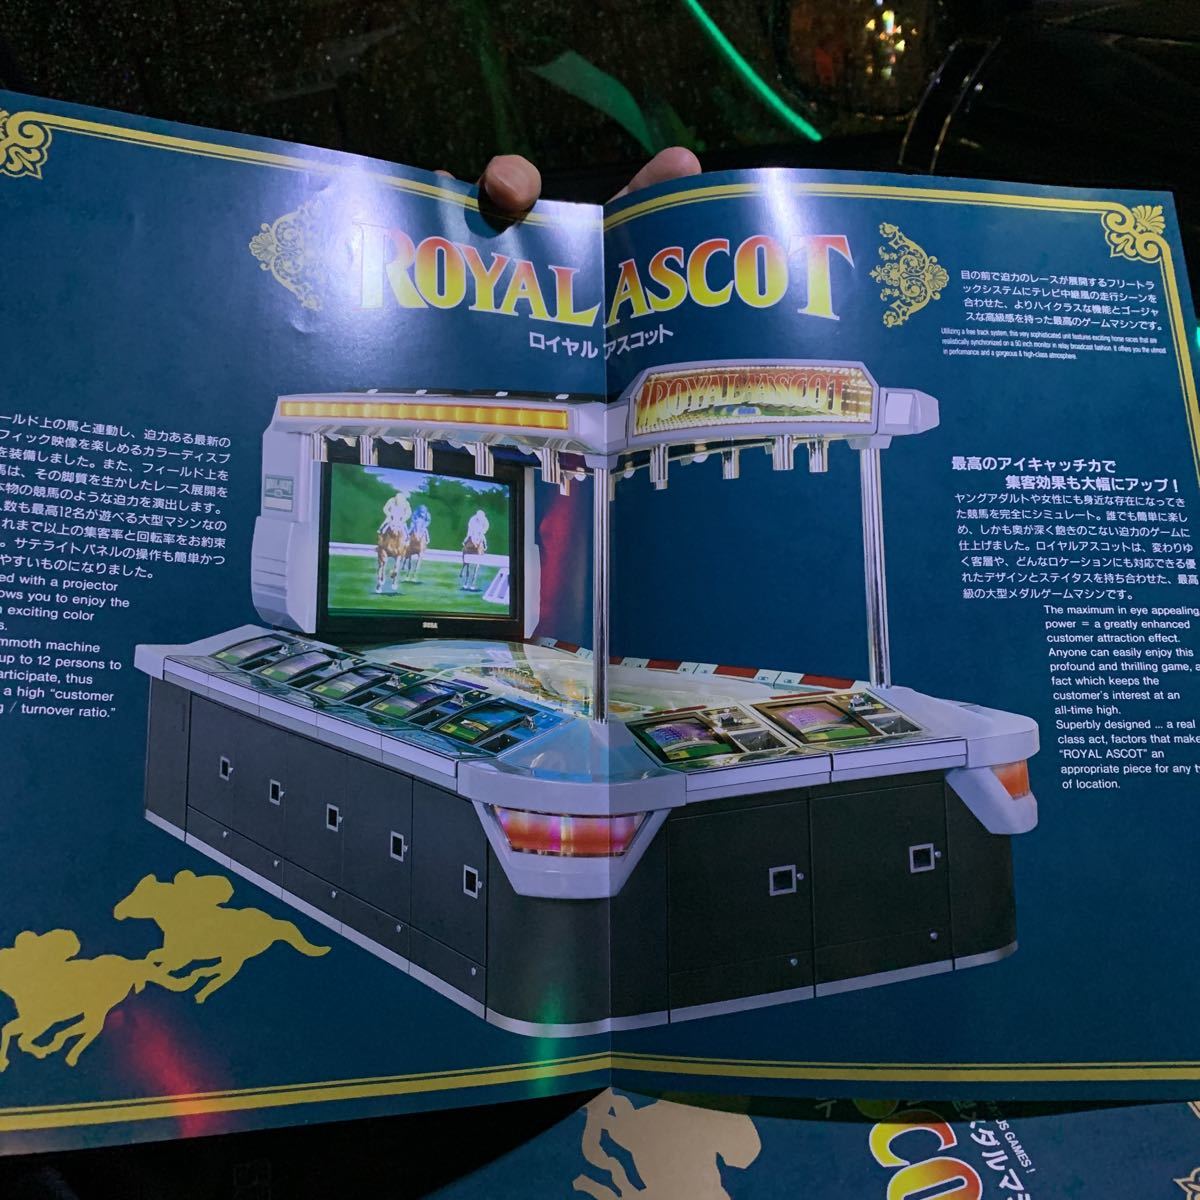 ヤフオク Sega セガ ロイヤルアスコット メダルゲーム機